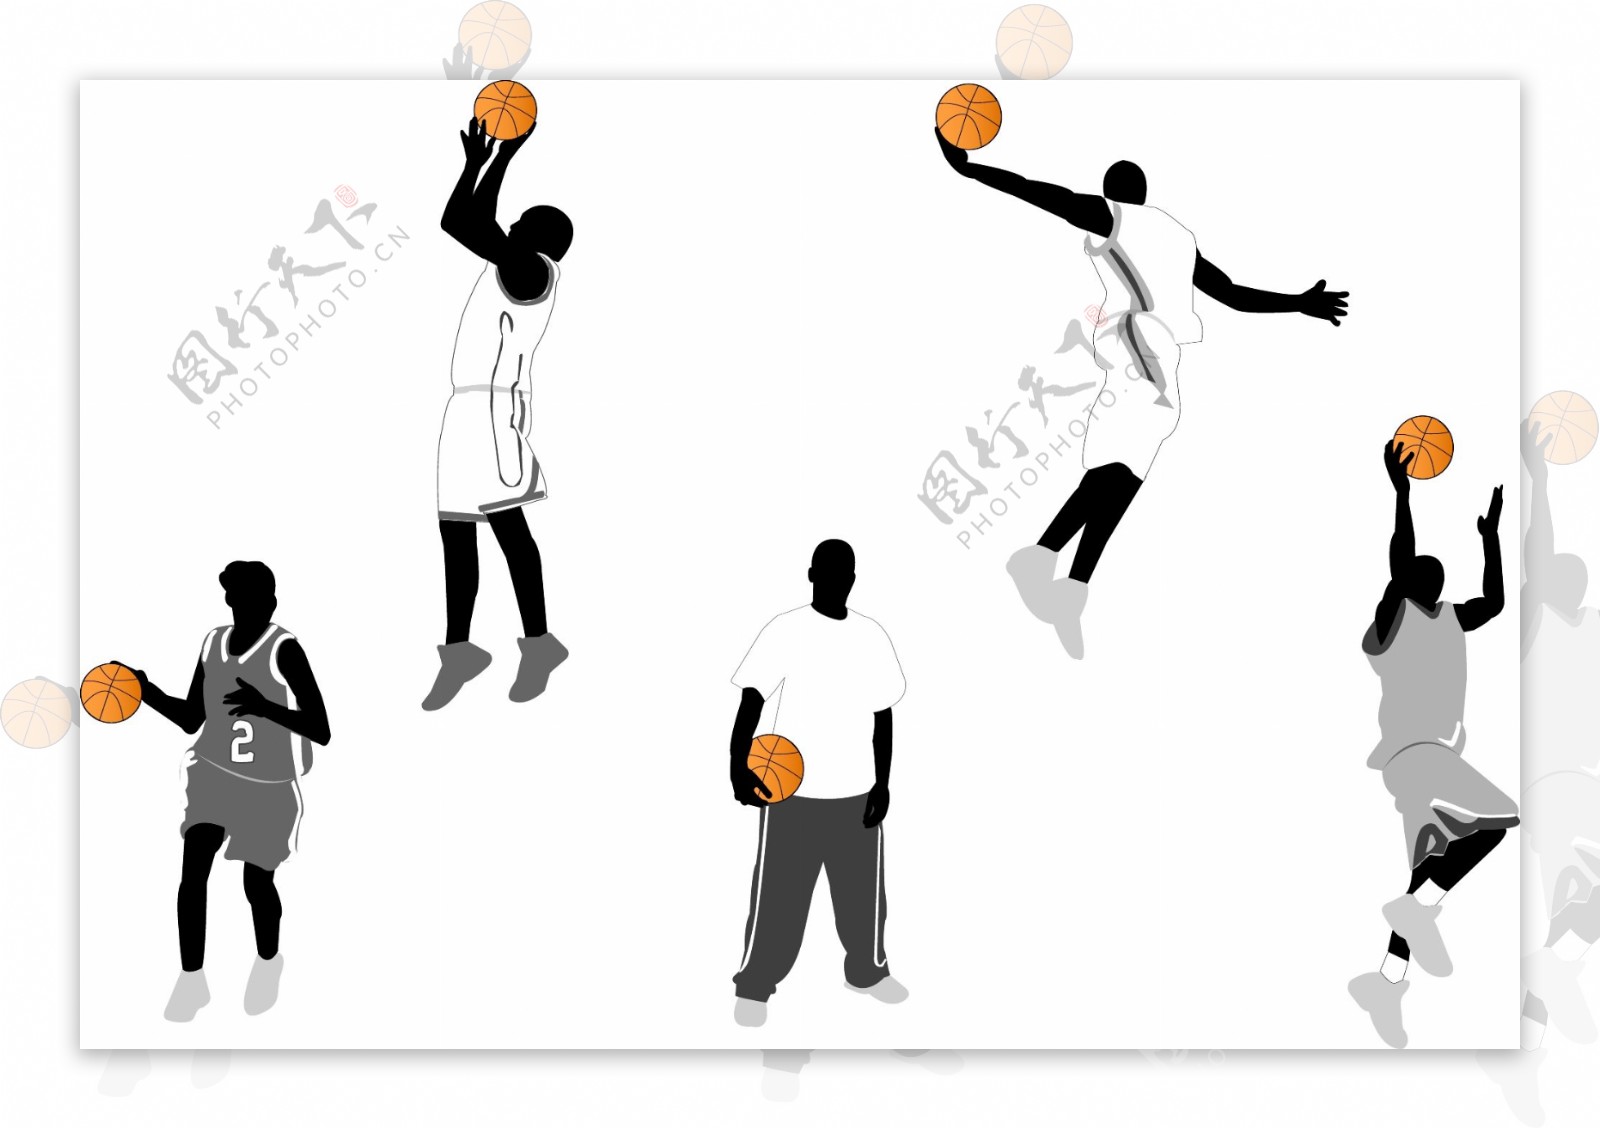 一组最具代表性的篮球动作剪影矢量素材